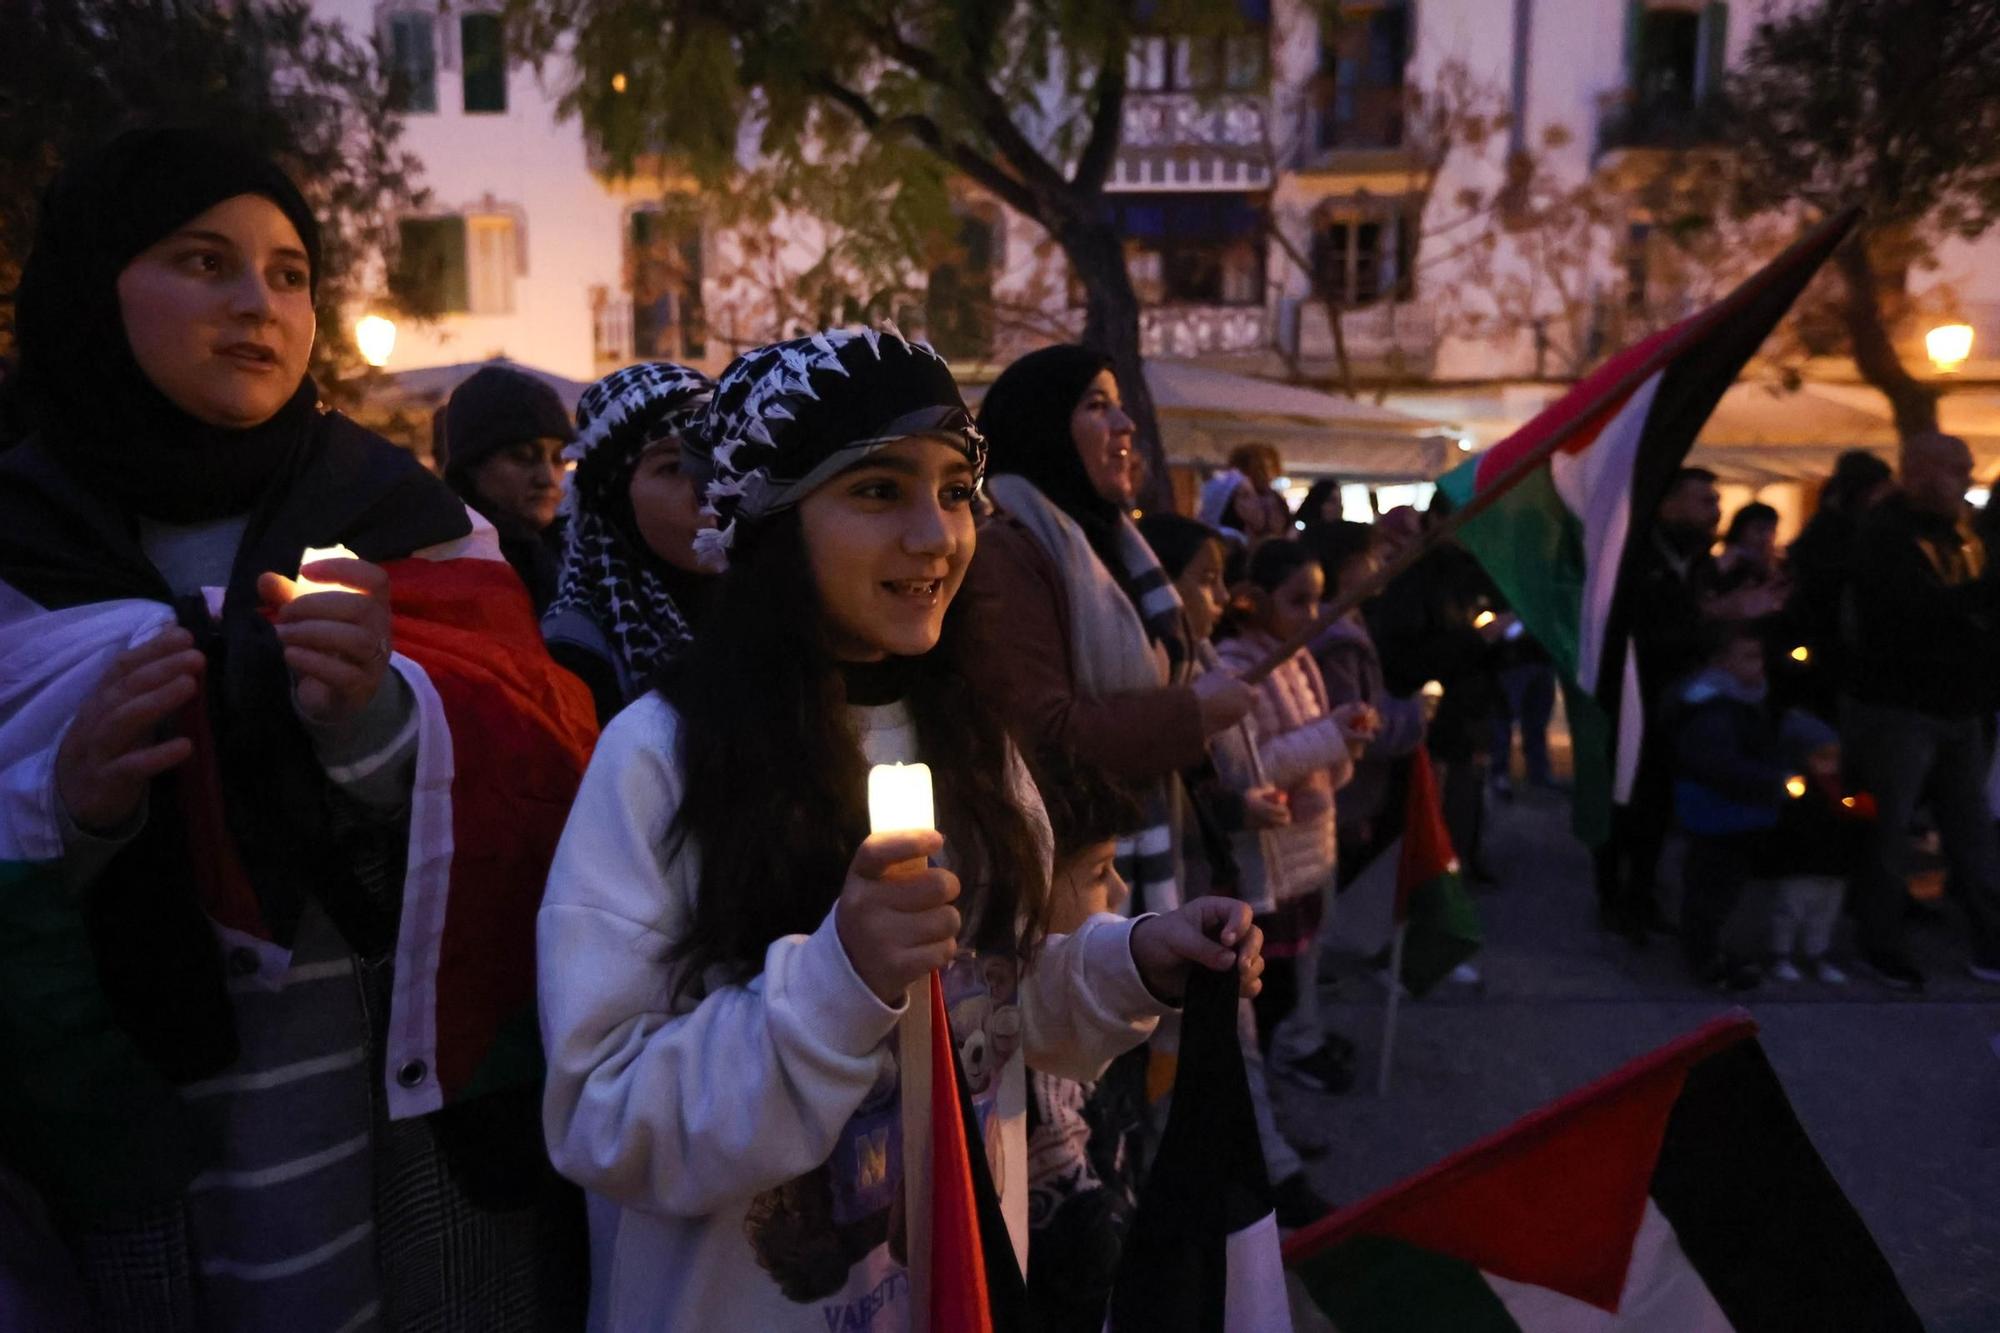 Galería: Manifestación por Palestina